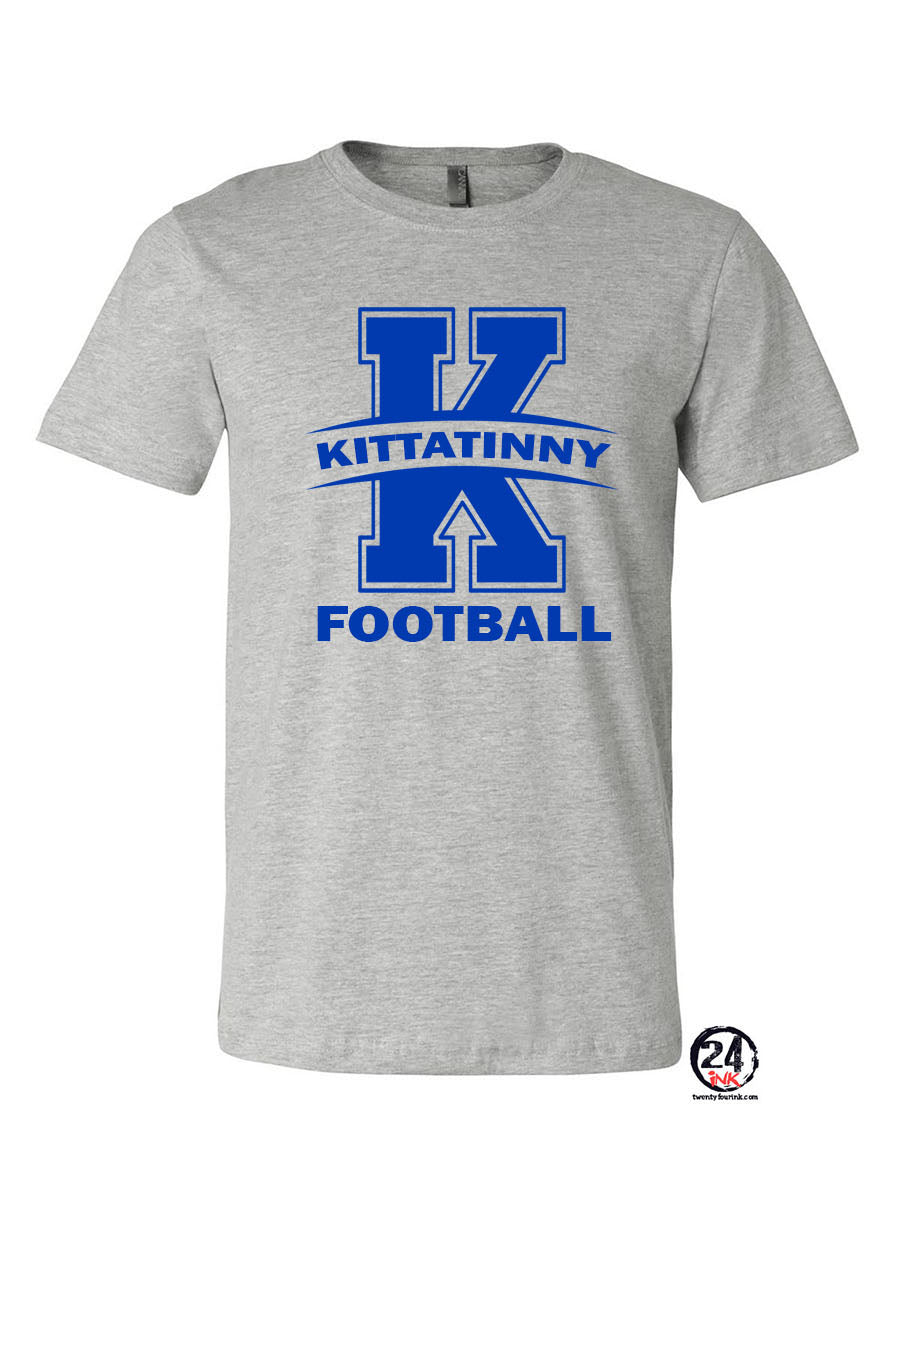 Kittatinny Football Design 12